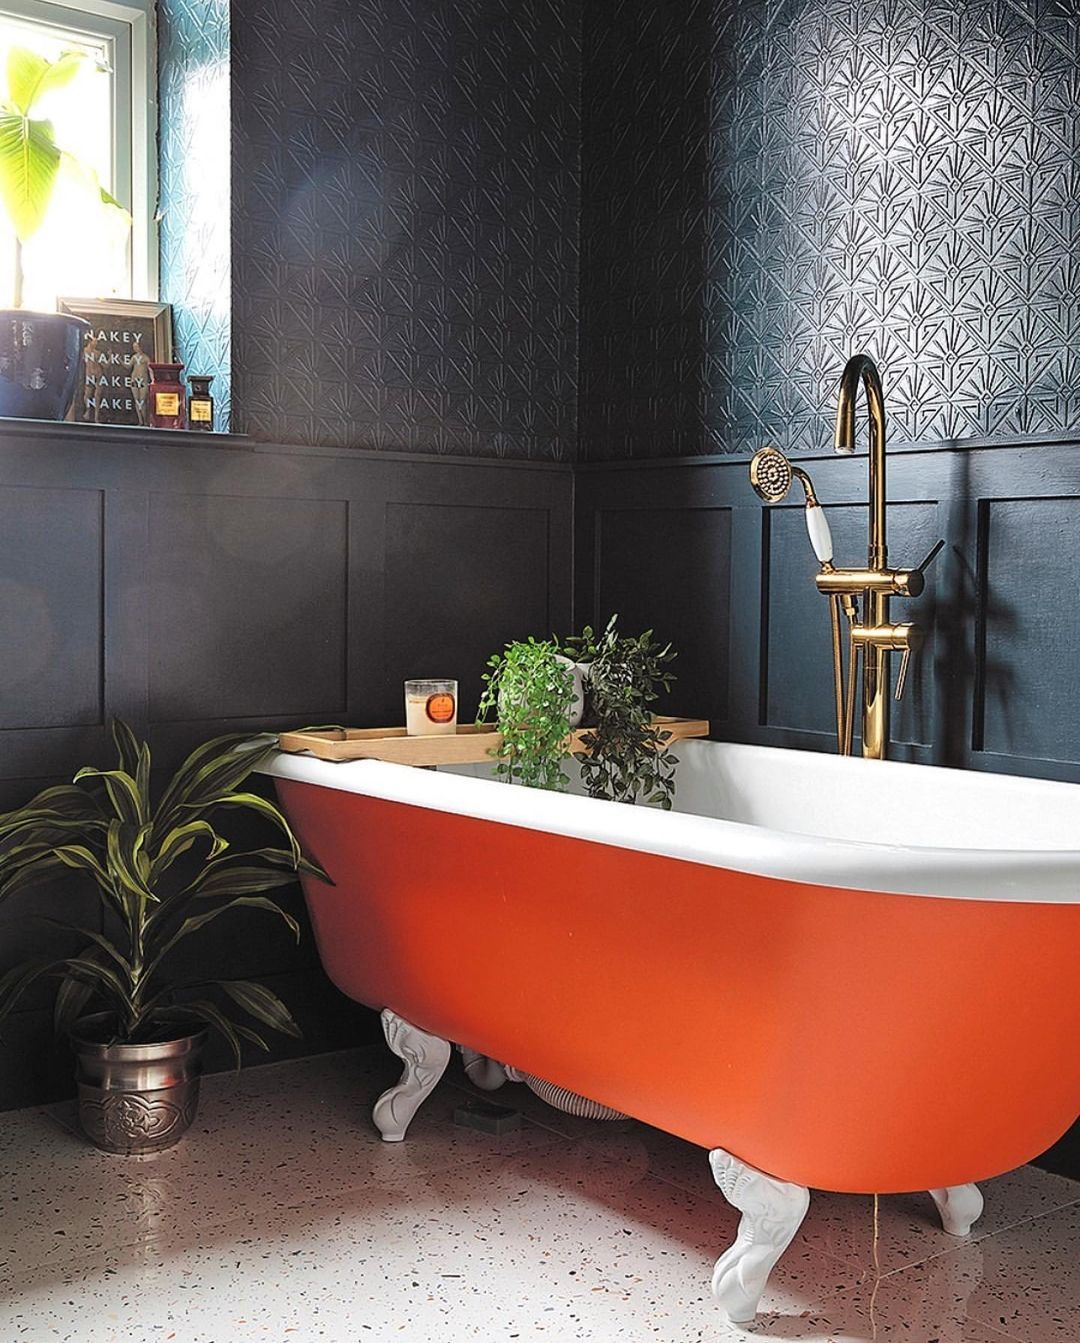 Cho căn phòng tắm gia đình thêm phần rực rỡ với điểm nhấn là chiếc bồn tắm đầy màu sắc - Ảnh 1.